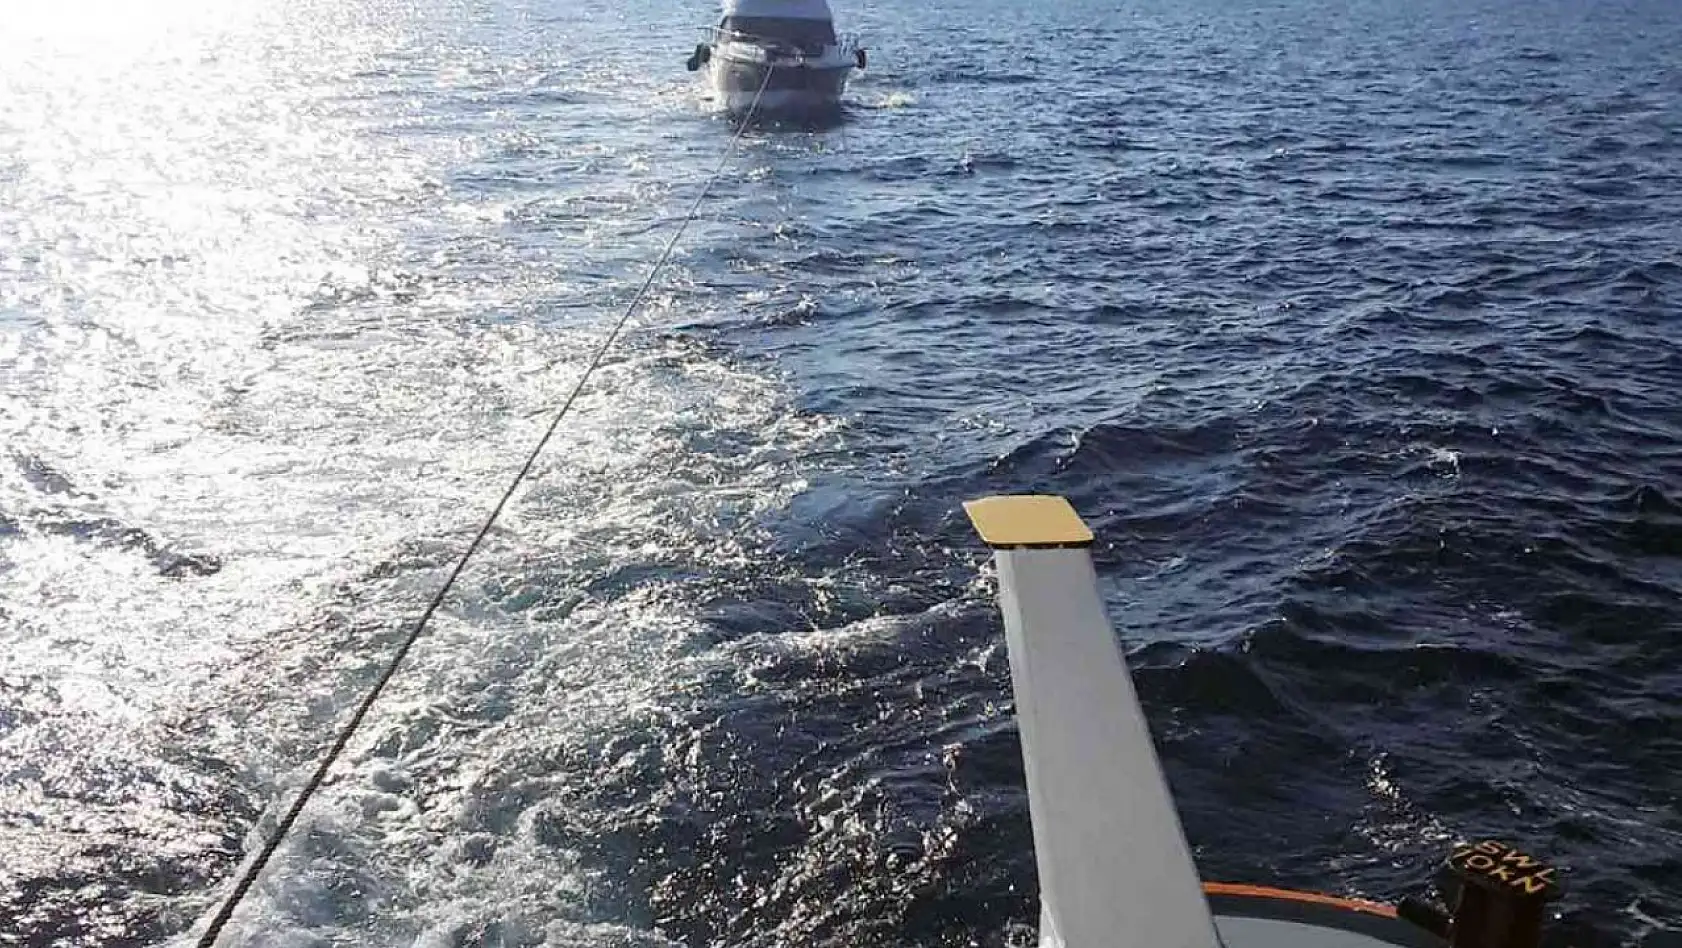 Makine arızası nedeniyle sürüklenen lüks tekne kurtarıldı